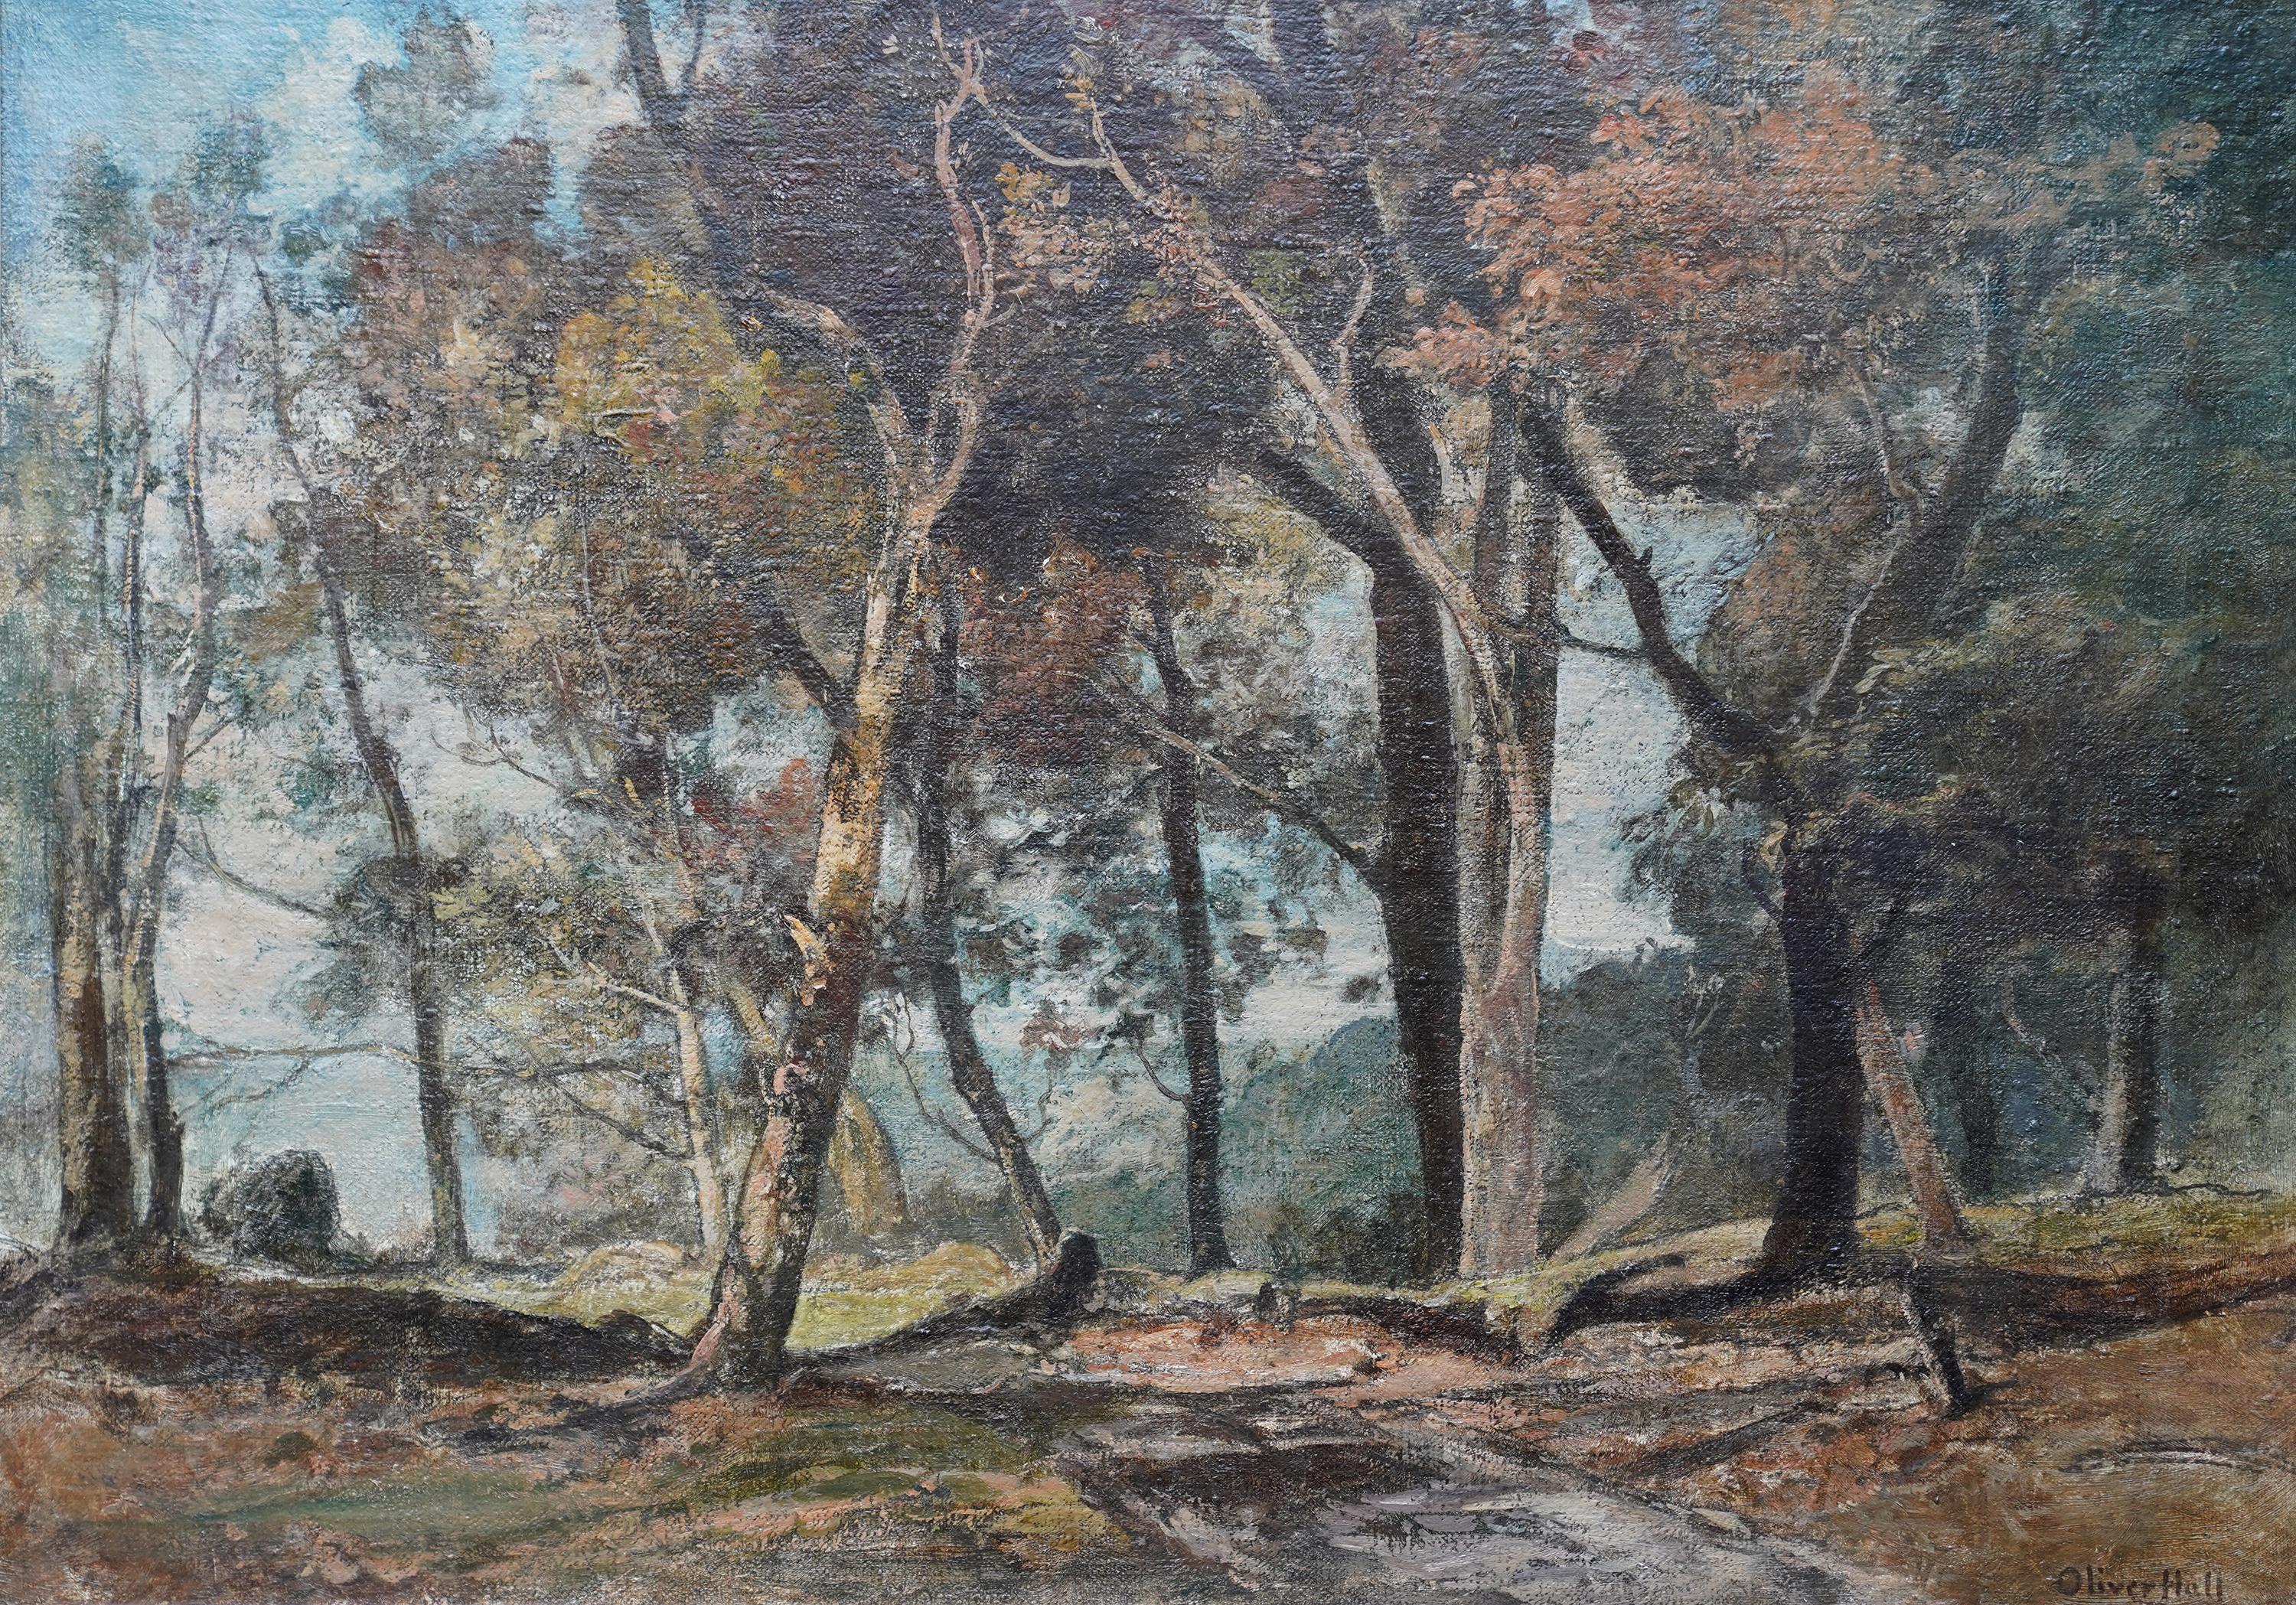 Woodland Path – Ölgemälde des britischen Impressionismus, 1930 – Painting von Oliver Hall, R.A., R.E., R.S.W.